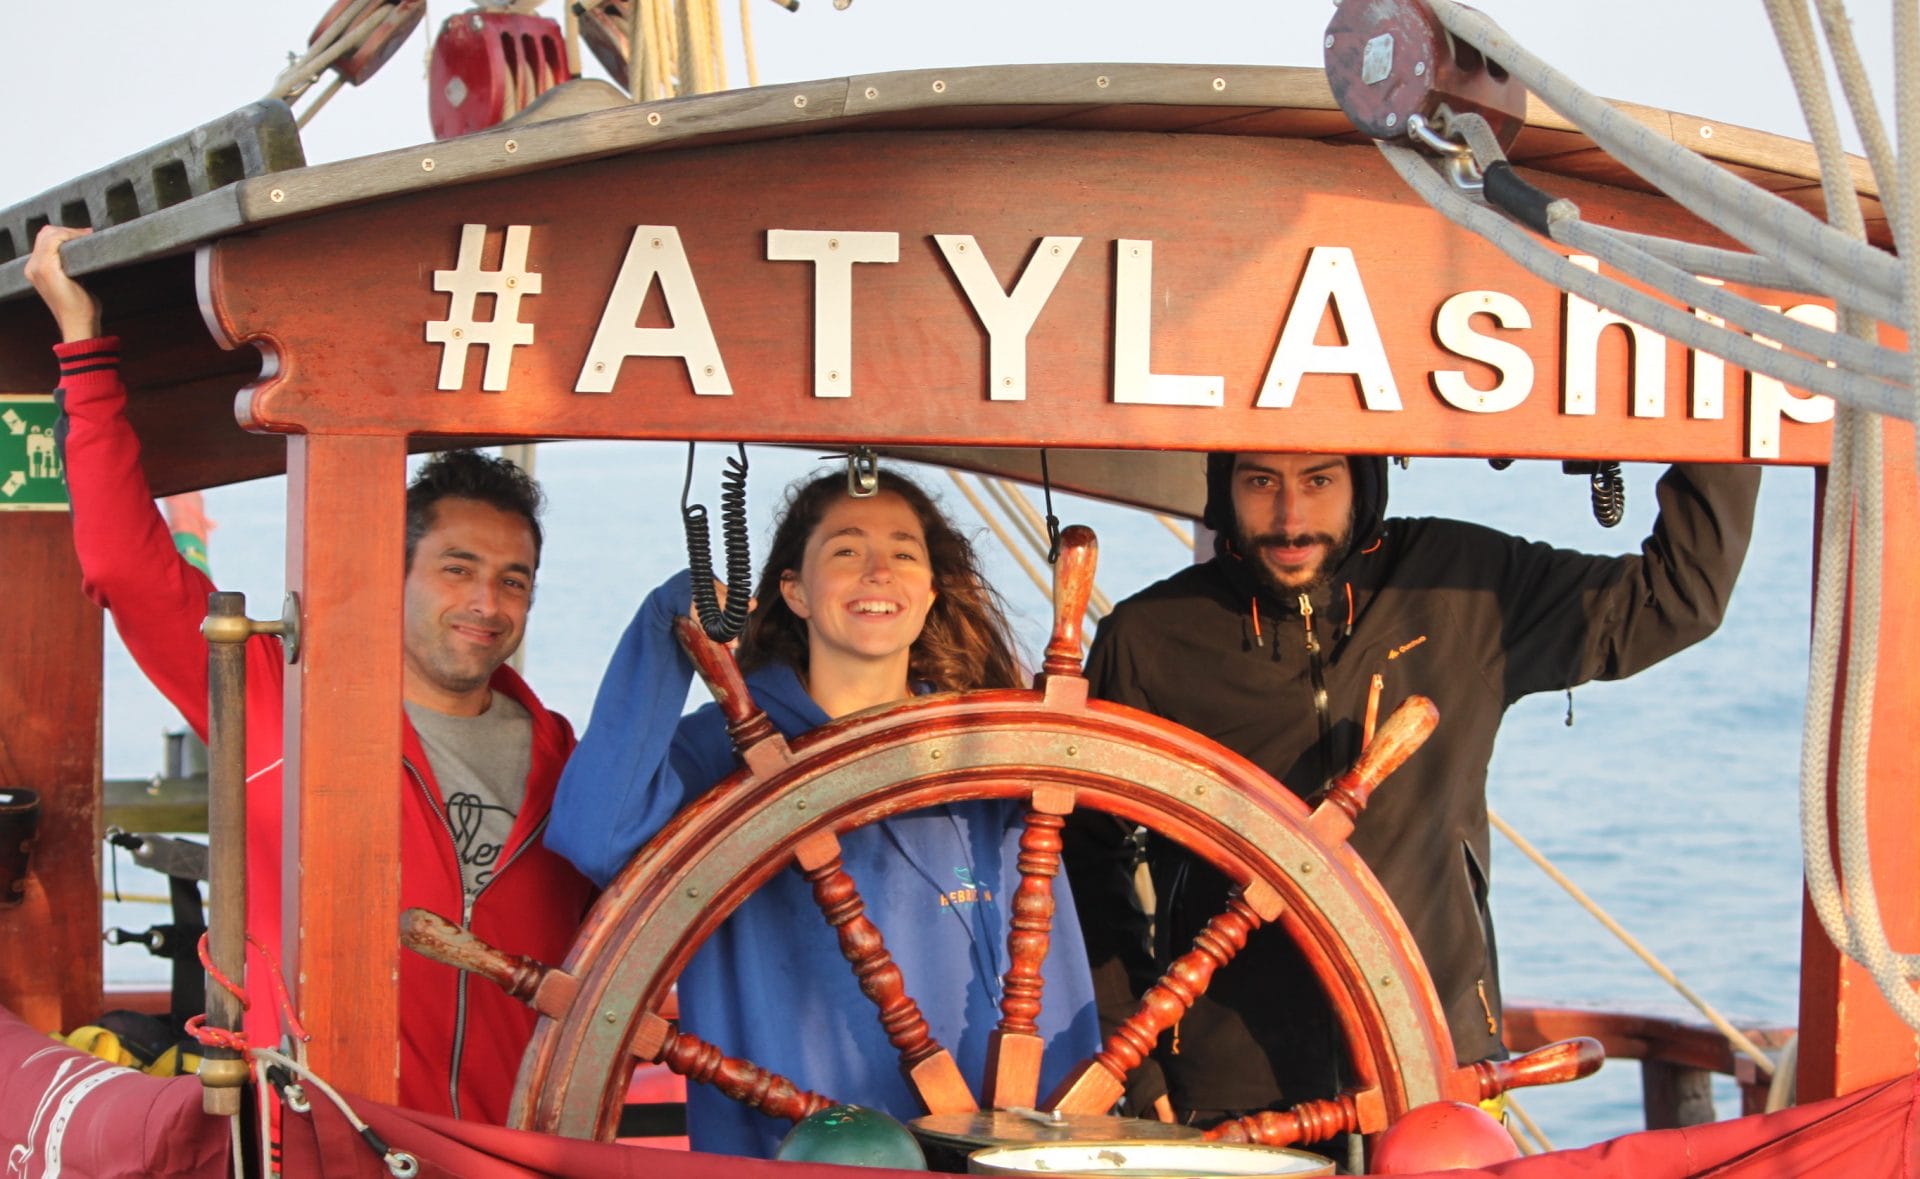 Soft Skills Life Skills Esperienza d'avventura Vela Formazione in barca a vela Nave Atyla